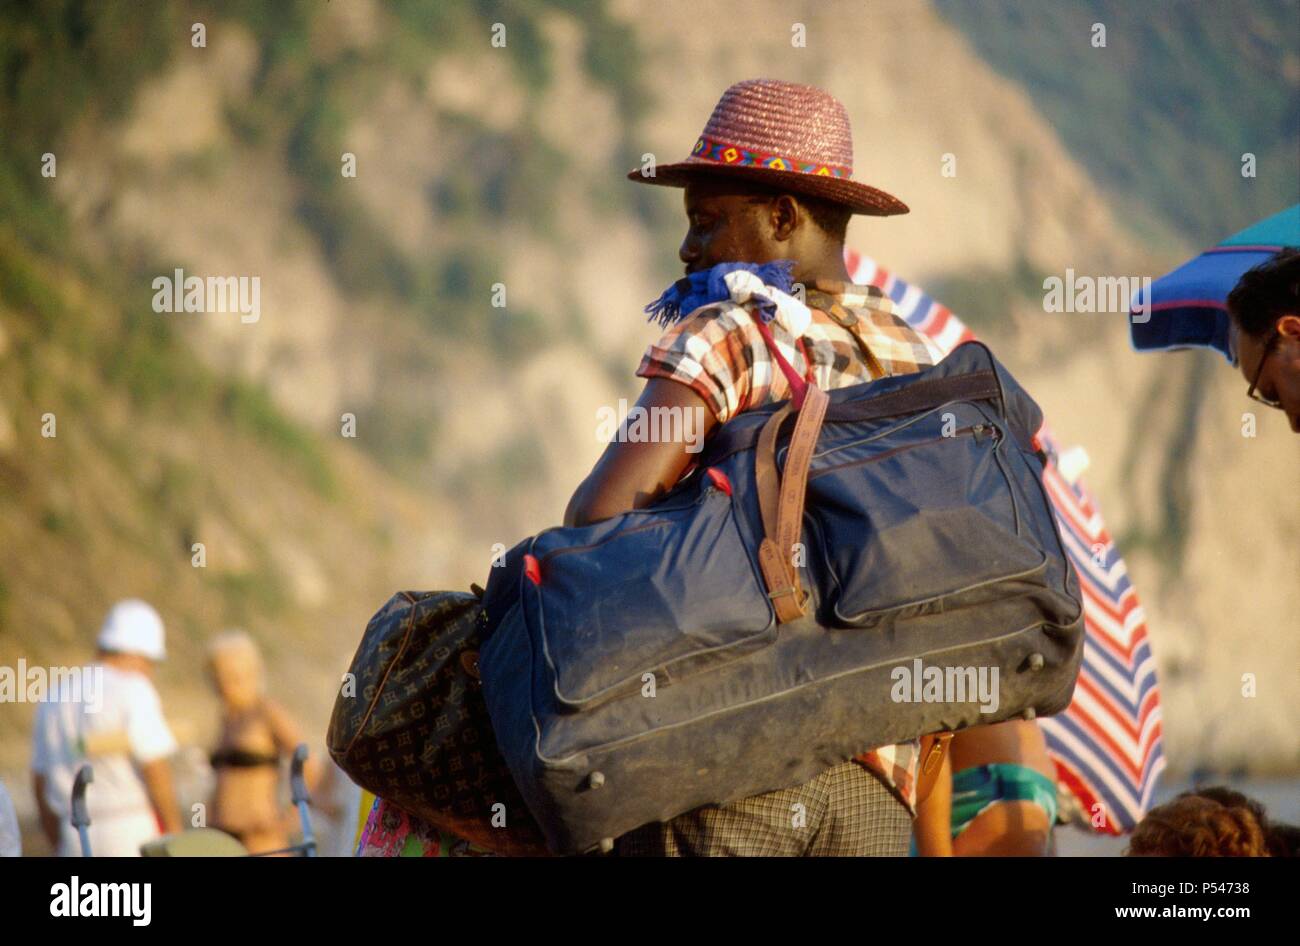 Afrikanische Einwanderer street vendor am Strand von Riva Trigoso (Ligurien, Italien) - venditore ambulante immigrato Africano sulla Spiaggia di Riva Trigoso (Ligurien, Italien) Stockfoto